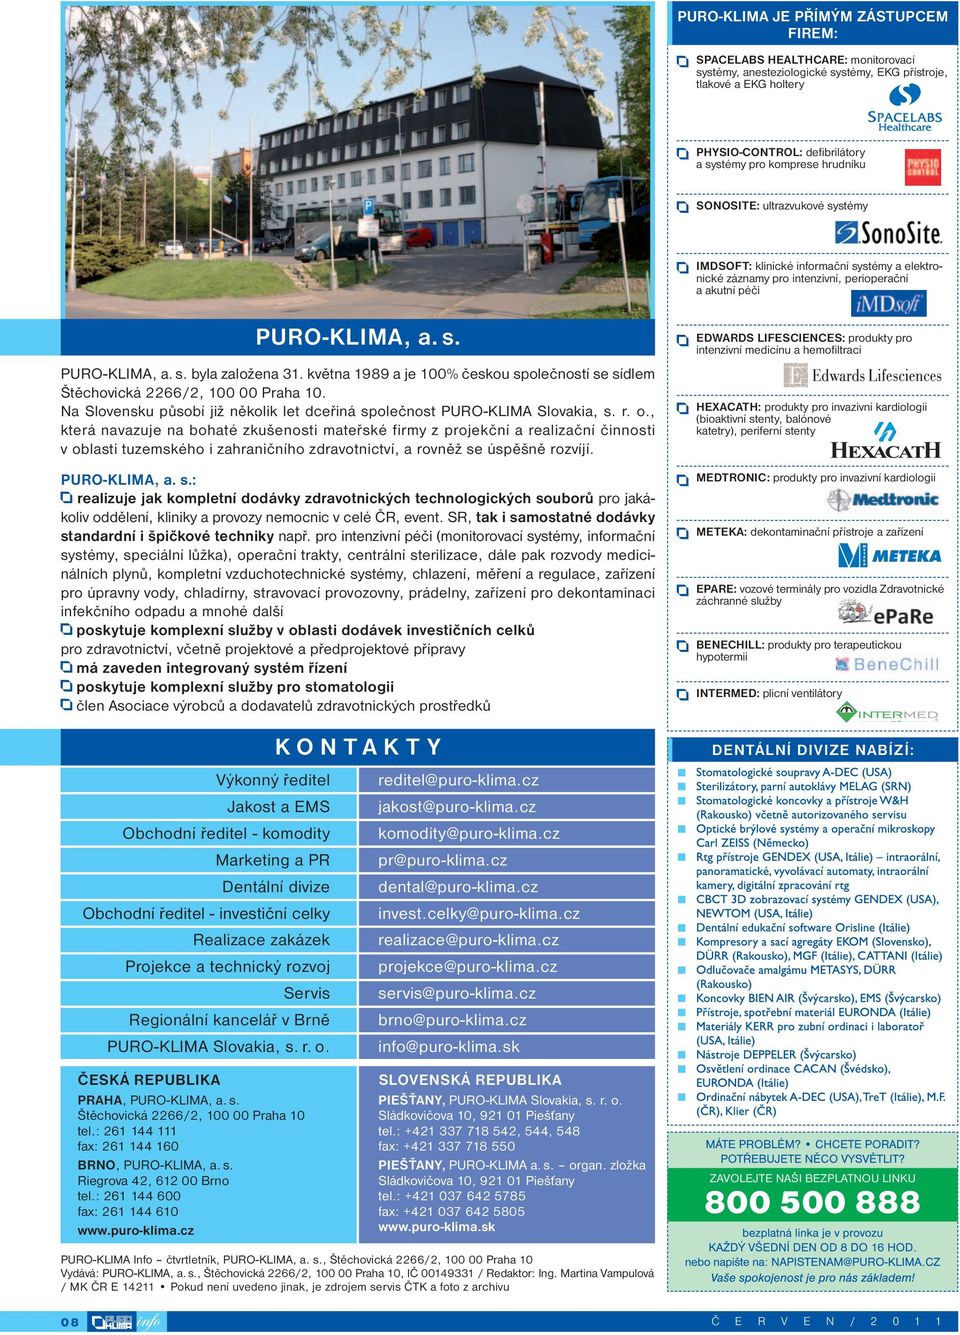 května 1989 a je 100% českou společností se sídlem Štěchovická 2266/2, 100 00 Praha 10. Na Slovensku působí již několik let dceřiná společnost PURO-KLIMA Slovakia, s. r. o.